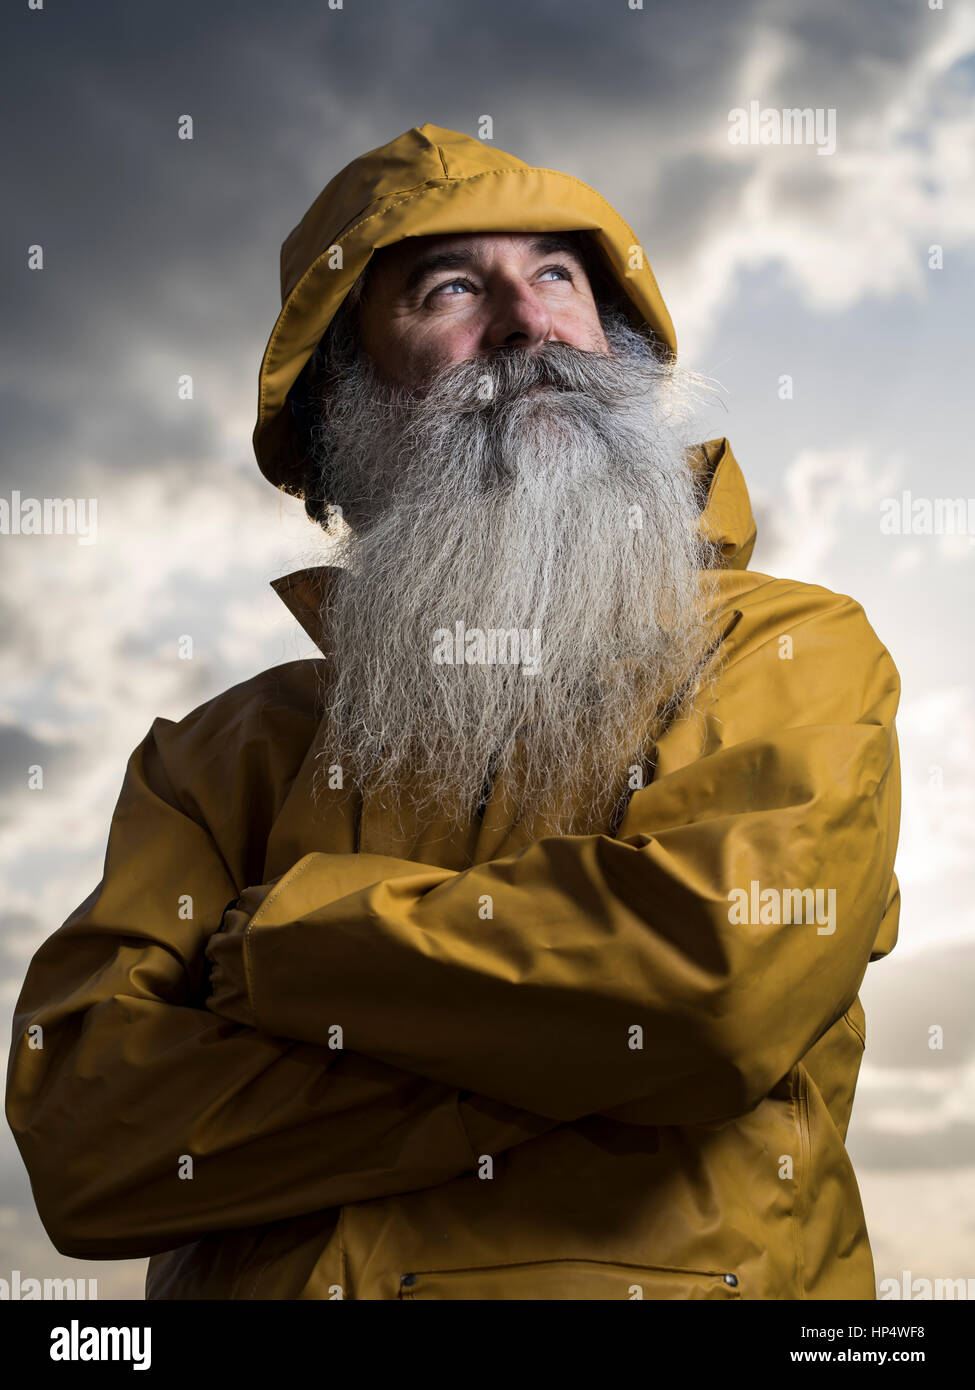 Pêcheur avec yellow jacket Banque D'Images